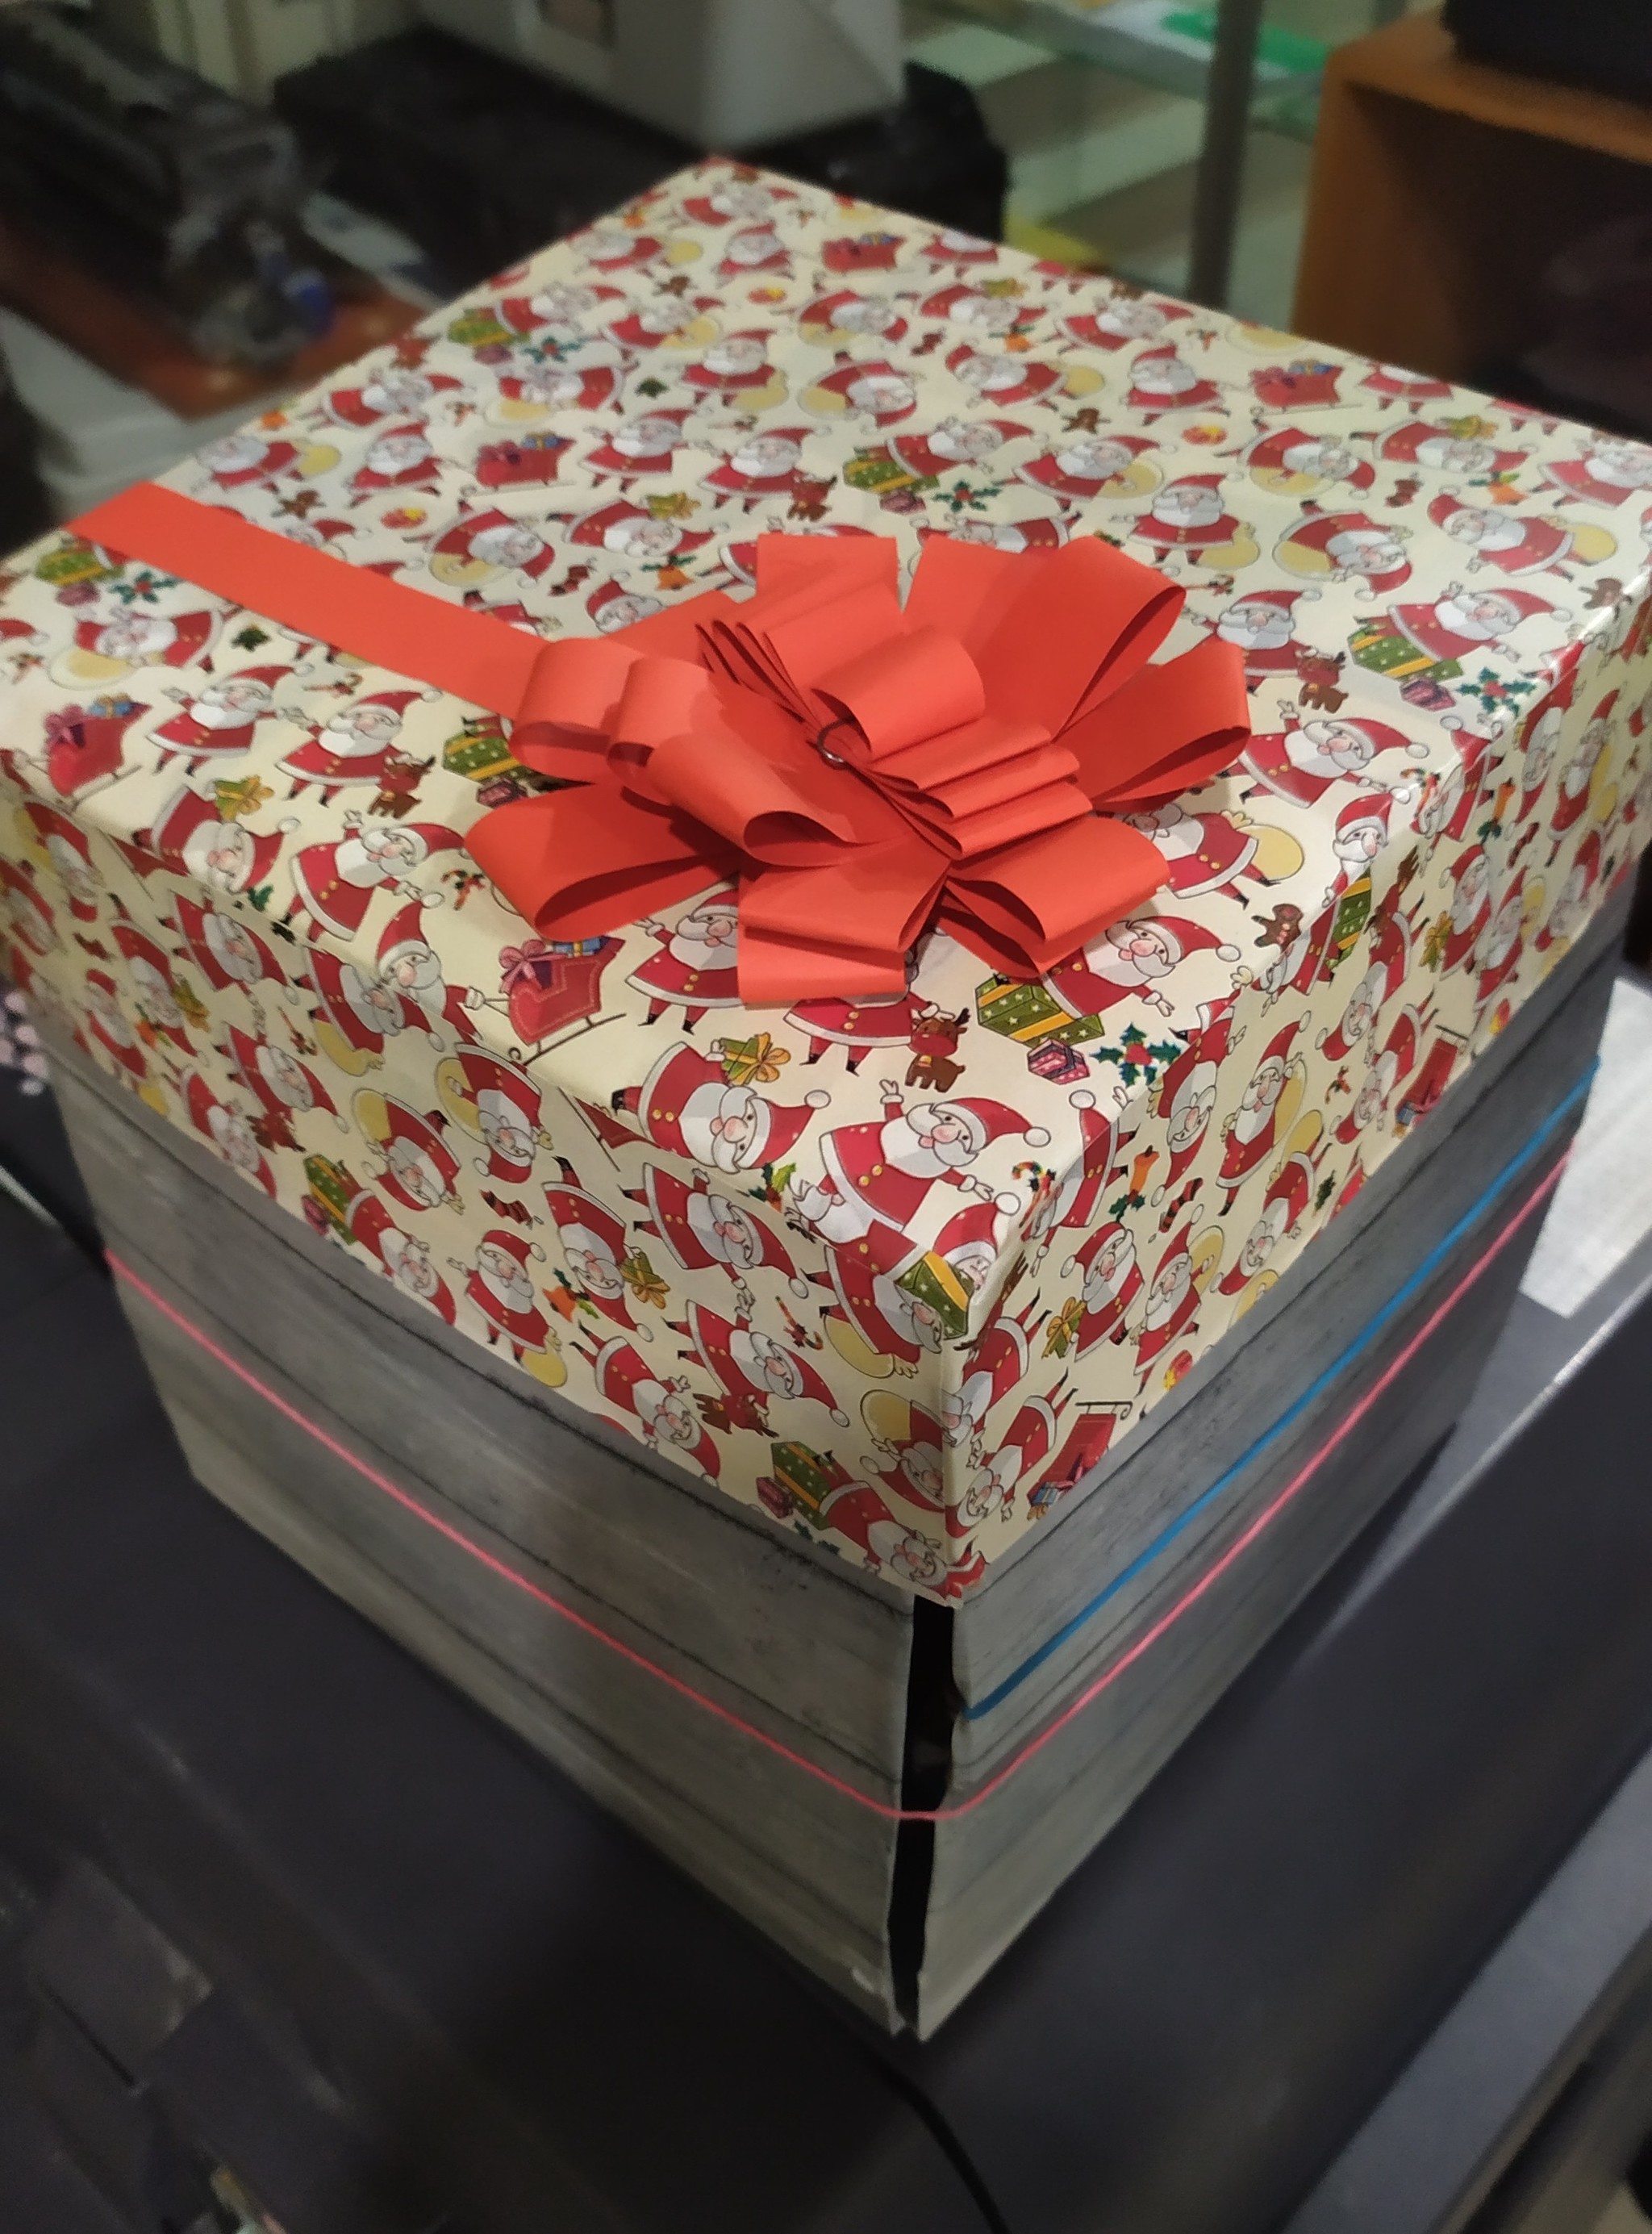 Упаковка, которая сделает любой подарок незабываемым: 10 идей с инструкциями